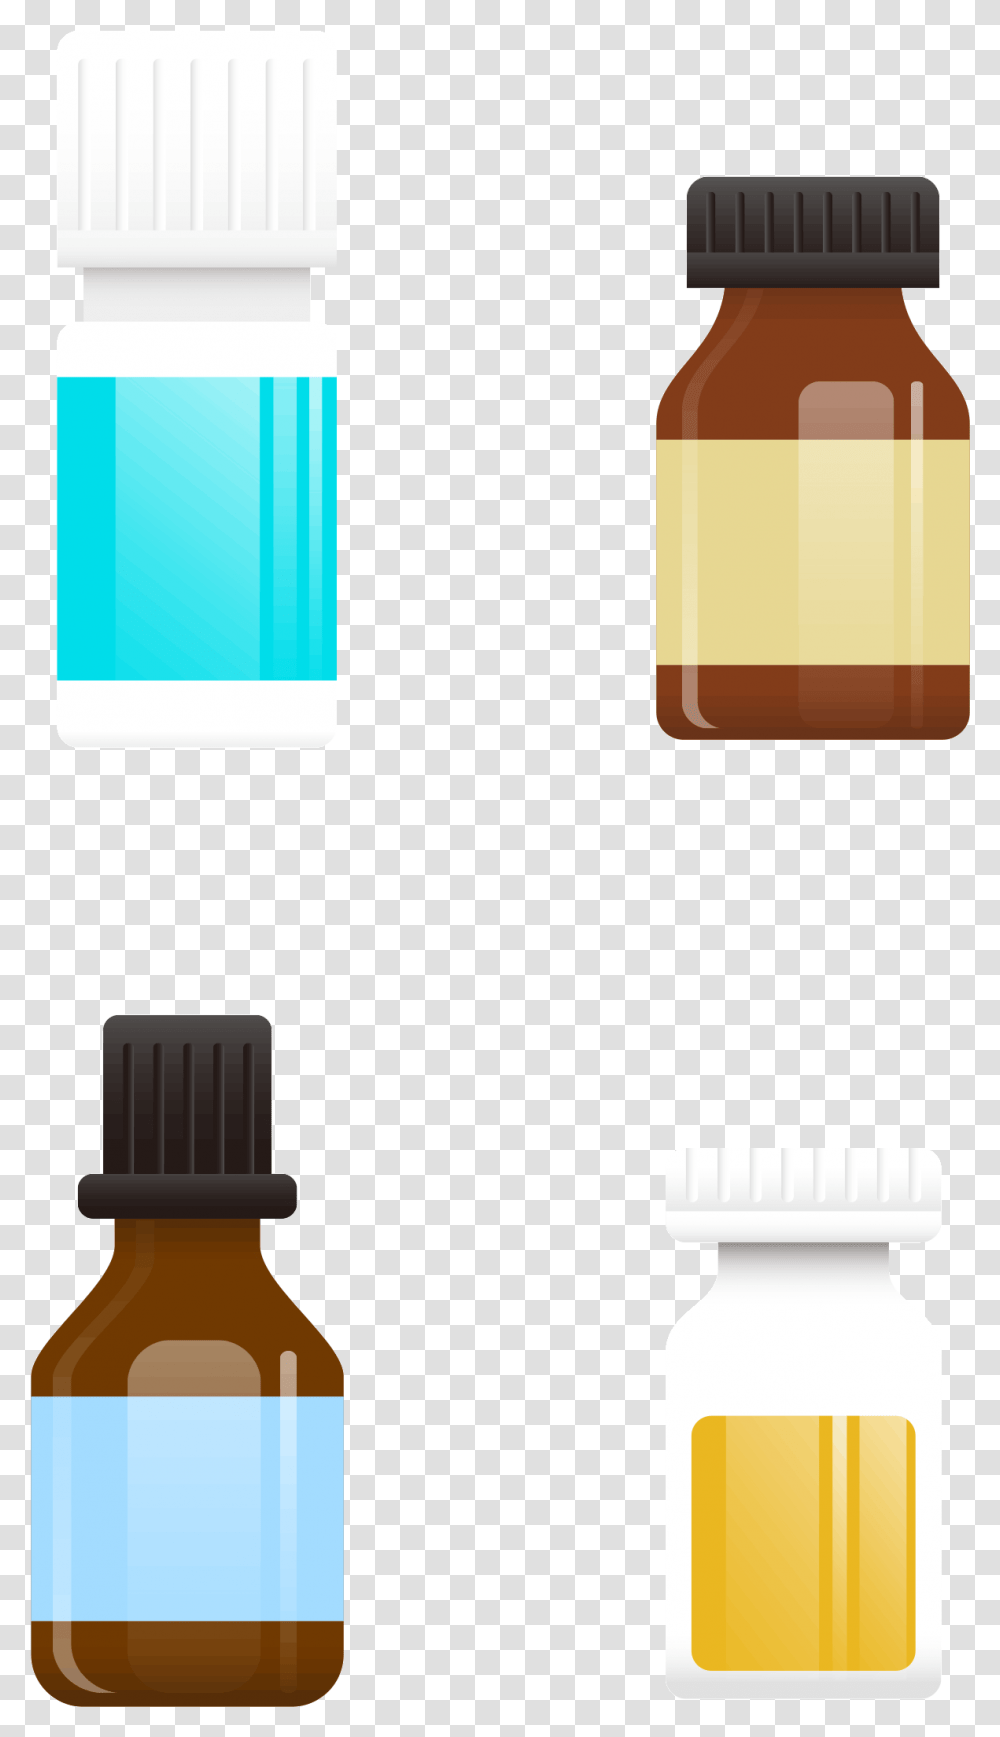 Glass Bottle Packaging And Labeling Design Portable, Medication, Beverage, Drink, Meal Transparent Png